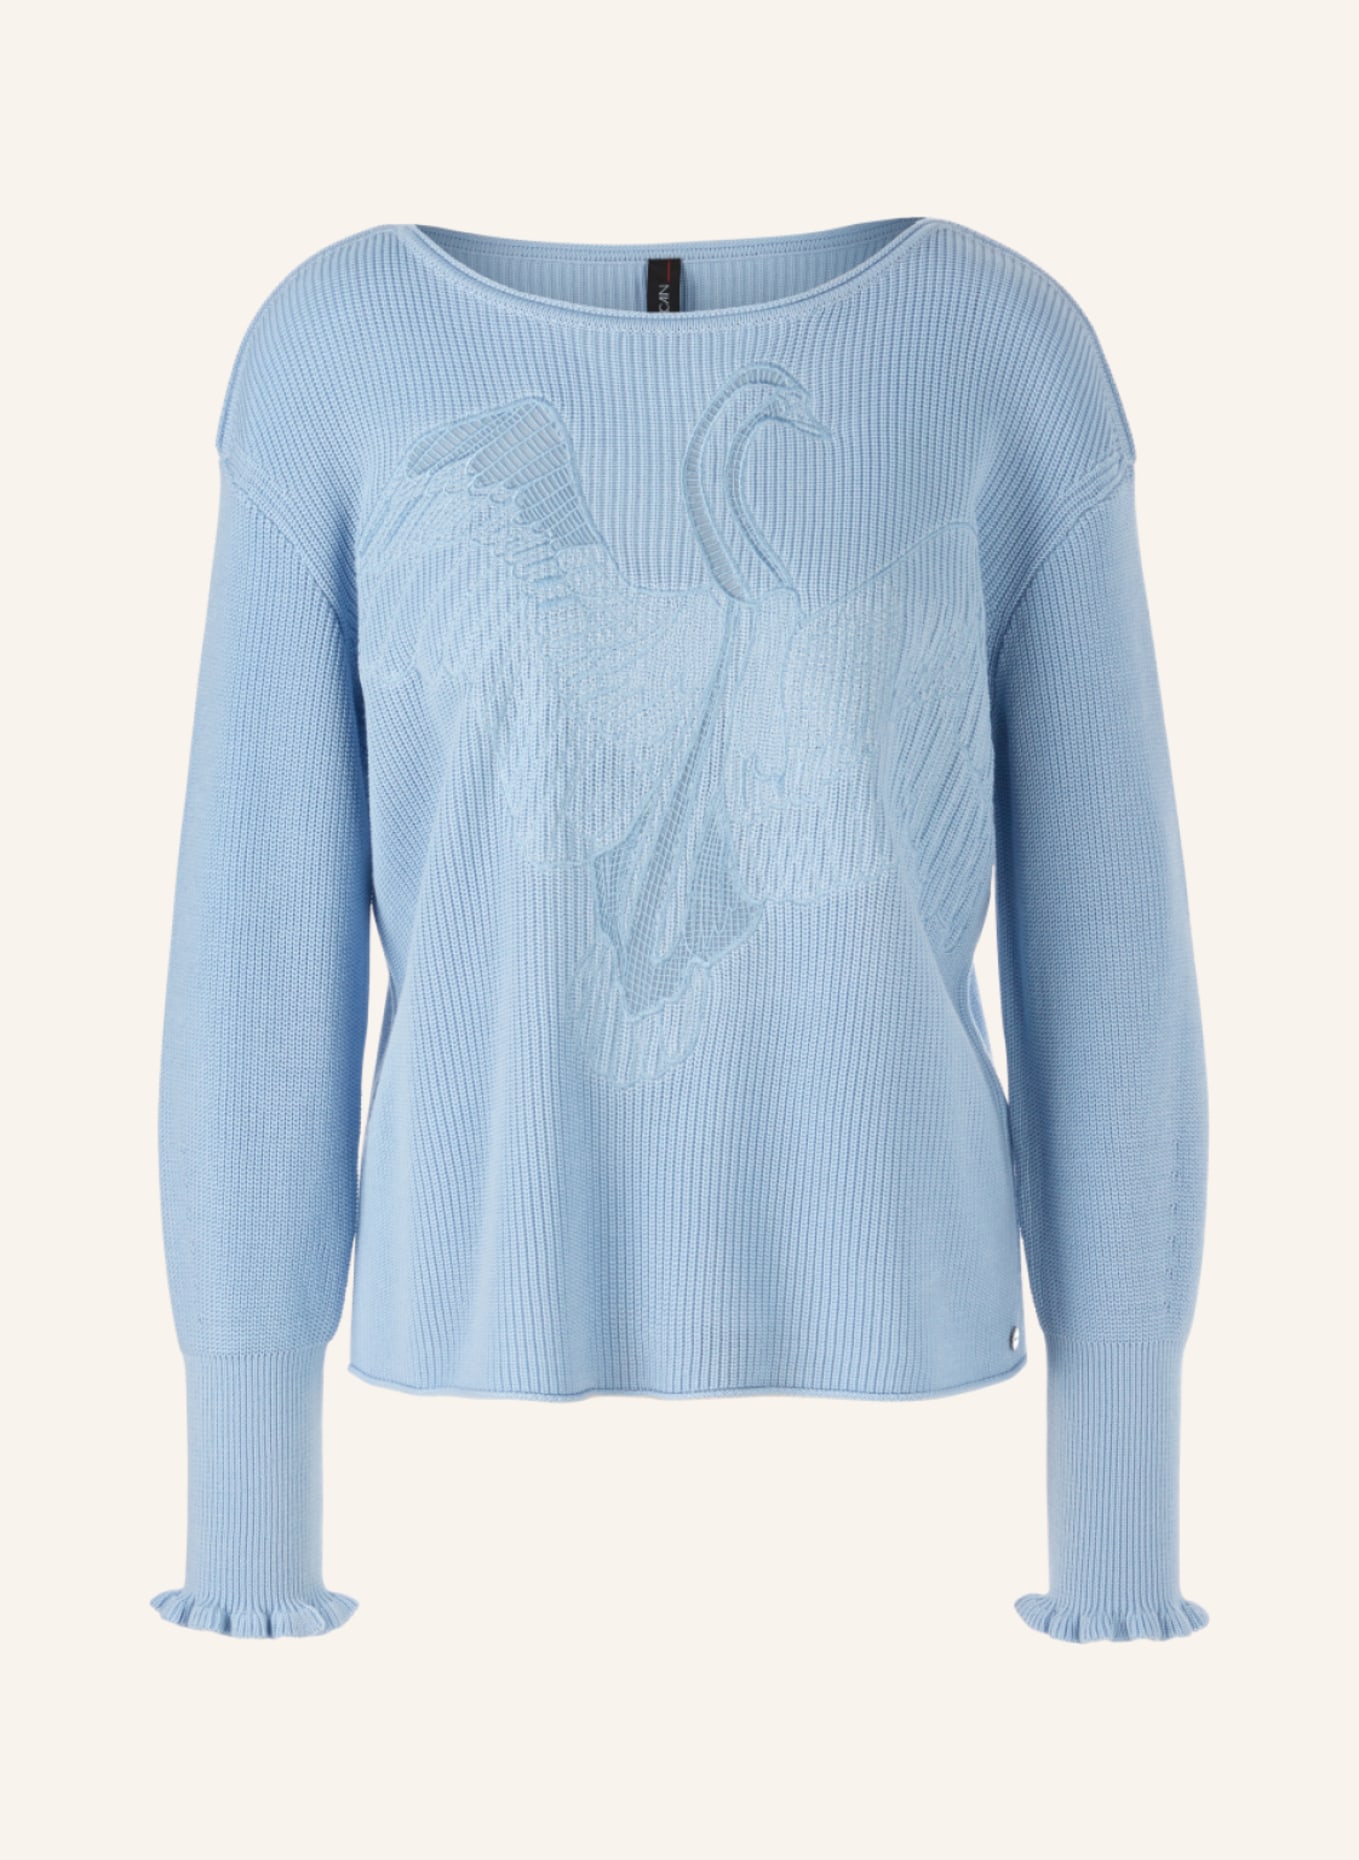 MARC CAIN Pullover, Farbe: BLAU (Bild 1)